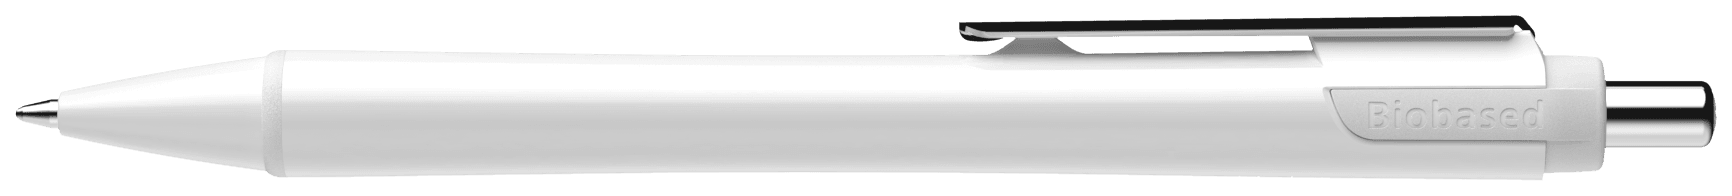 Slider Xite Promo in Farbe weiß/weiß